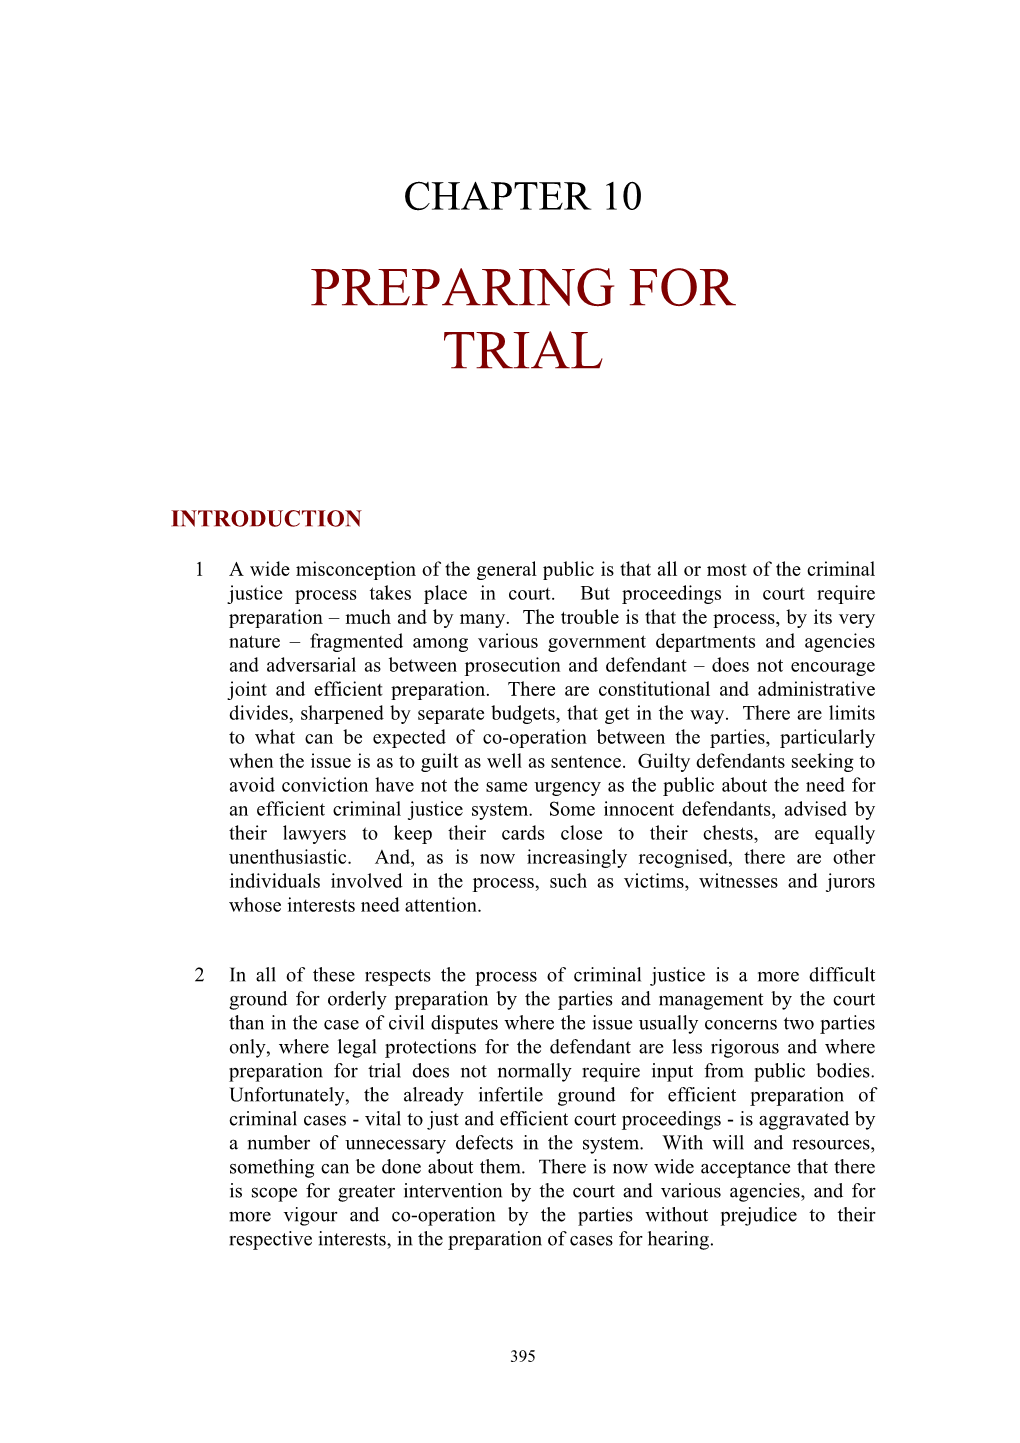 Preparing for Trial